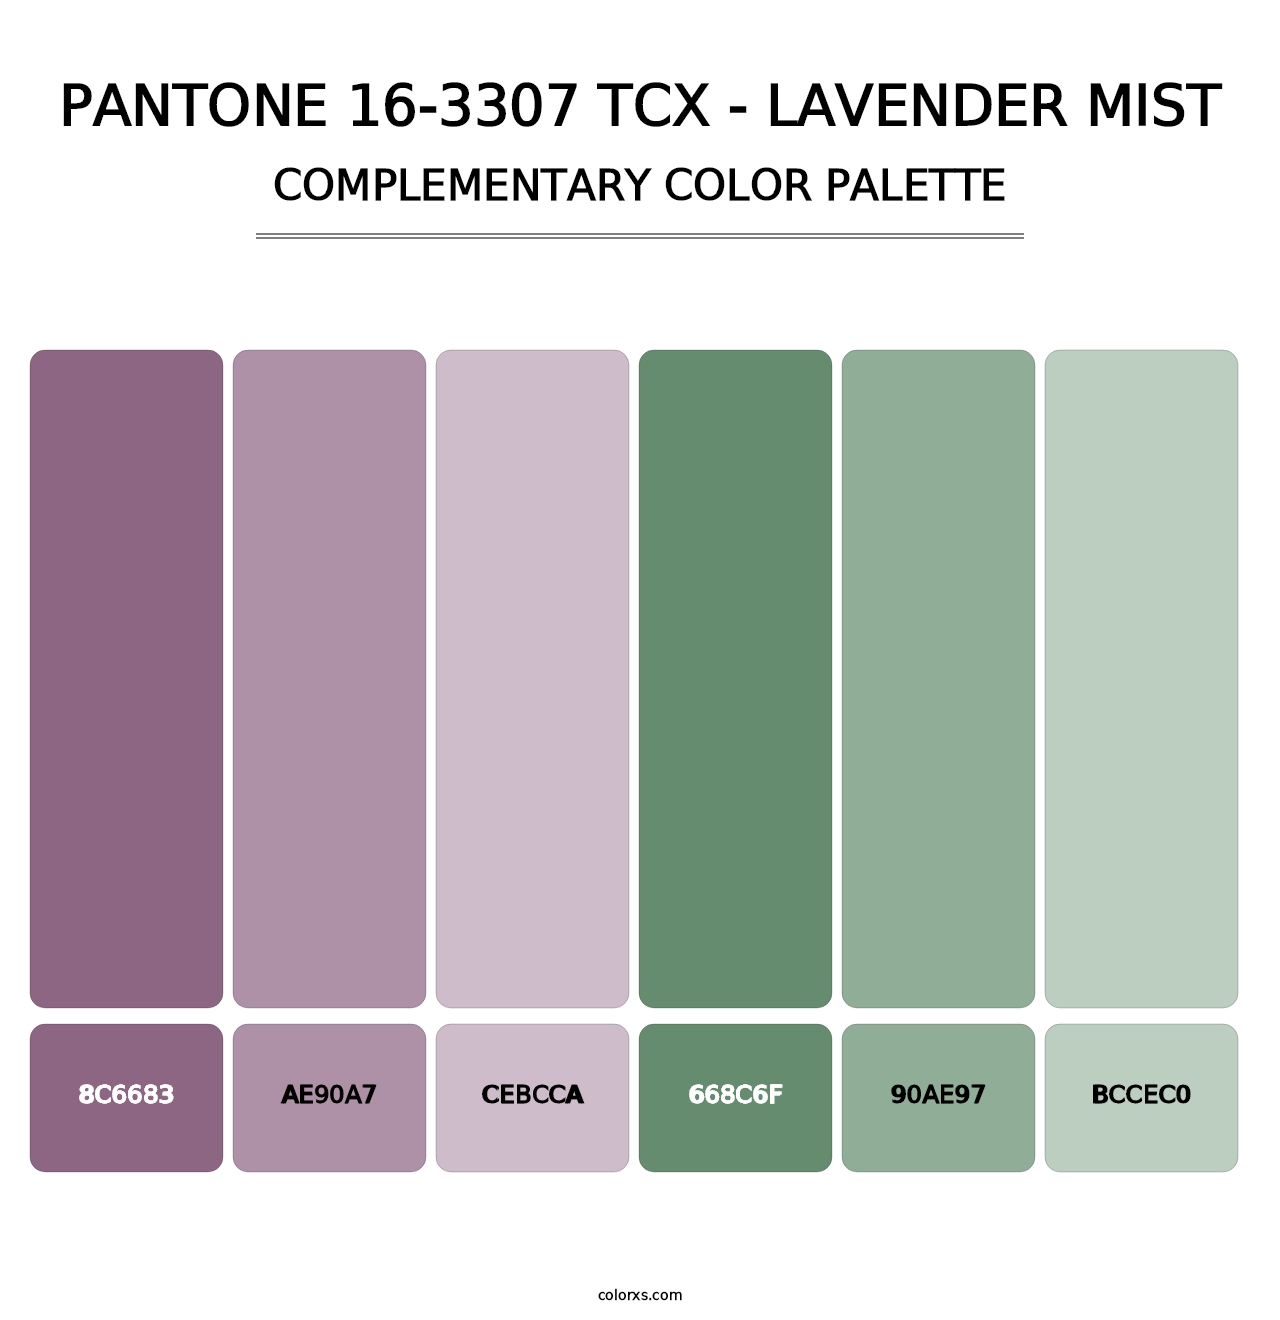 PANTONE 16-3307 TCX - Lavender Mist - Complementary Color Palette